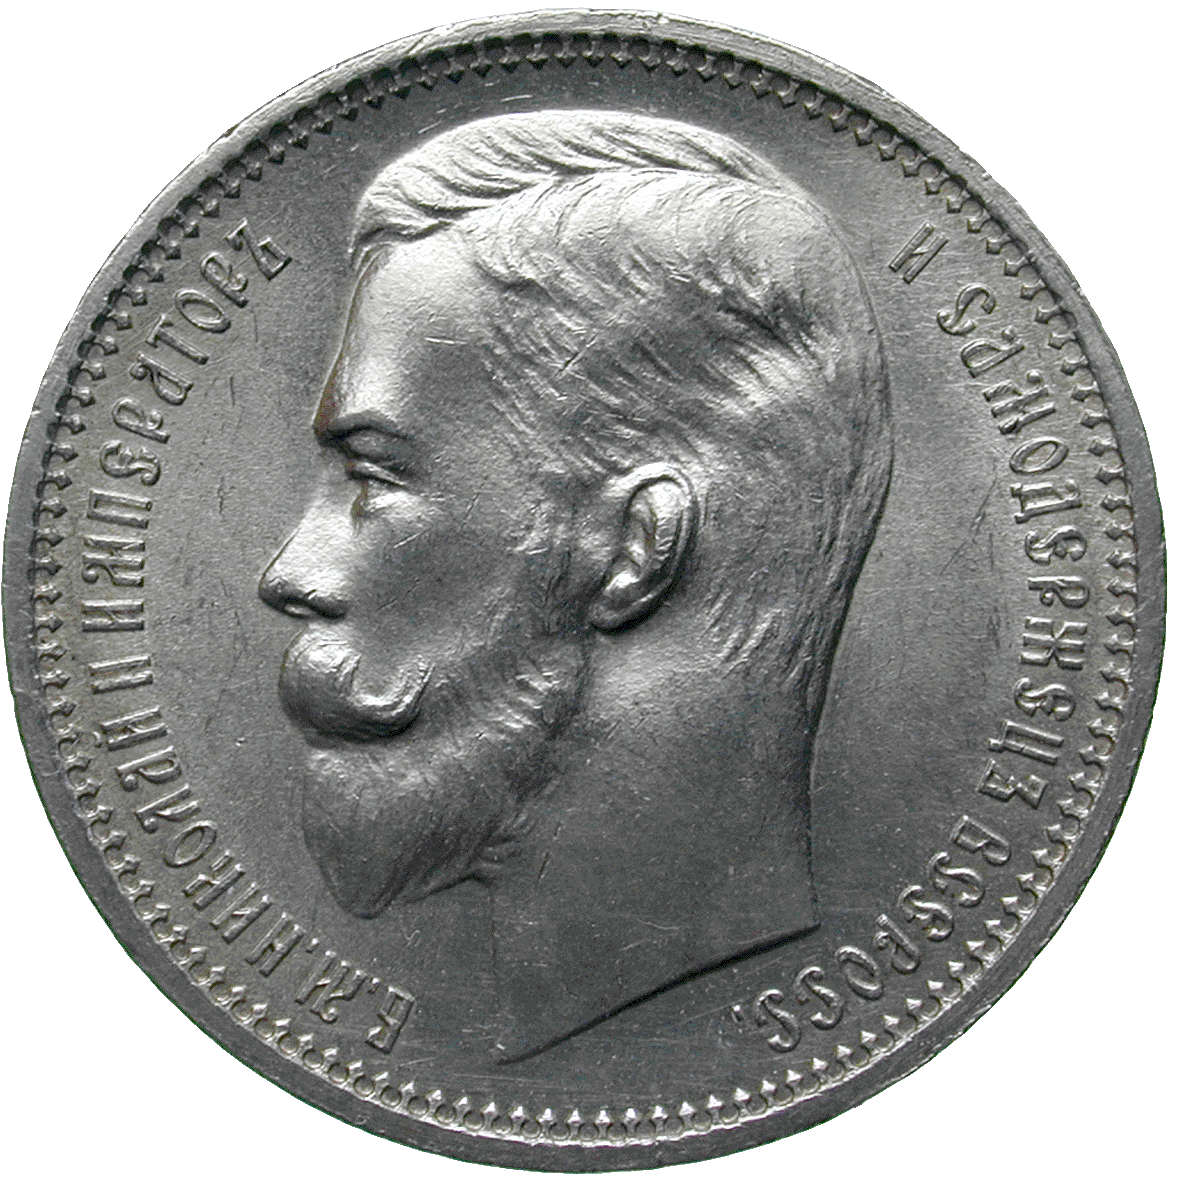 Zarenreich Russland, Nikolaus II., Rubel 1912 (obverse)